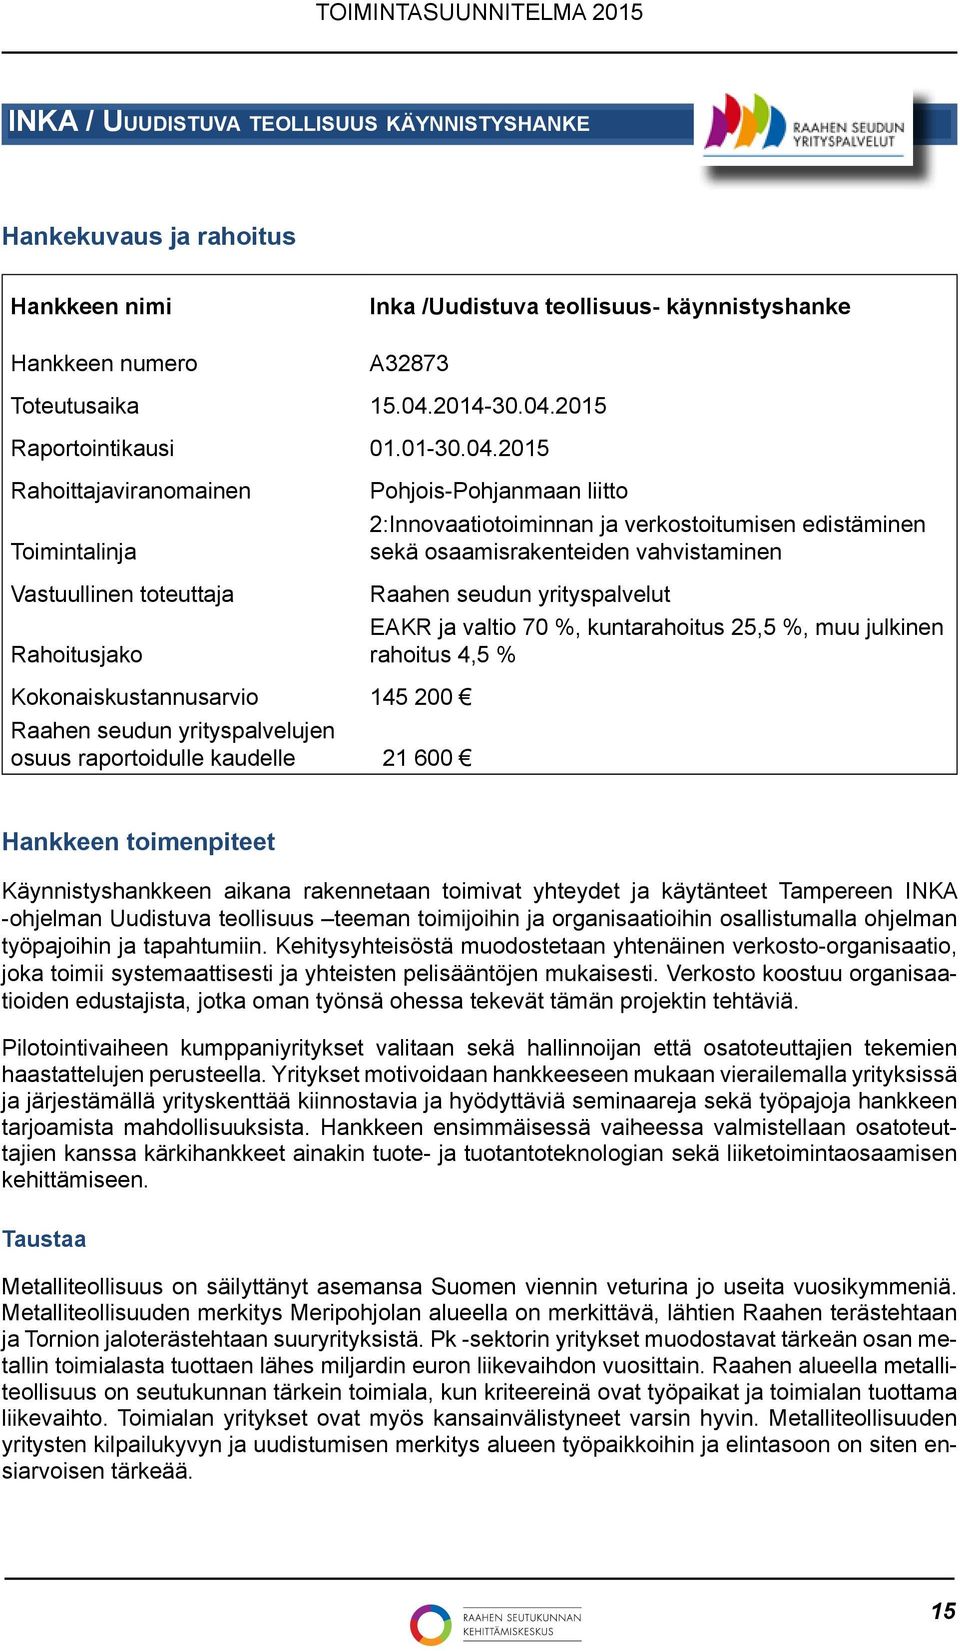 2015 Rahoittajaviranomainen Toimintalinja Vastuullinen toteuttaja Rahoitusjako Pohjois-Pohjanmaan liitto 2:Innovaatiotoiminnan ja verkostoitumisen edistäminen sekä osaamisrakenteiden vahvistaminen